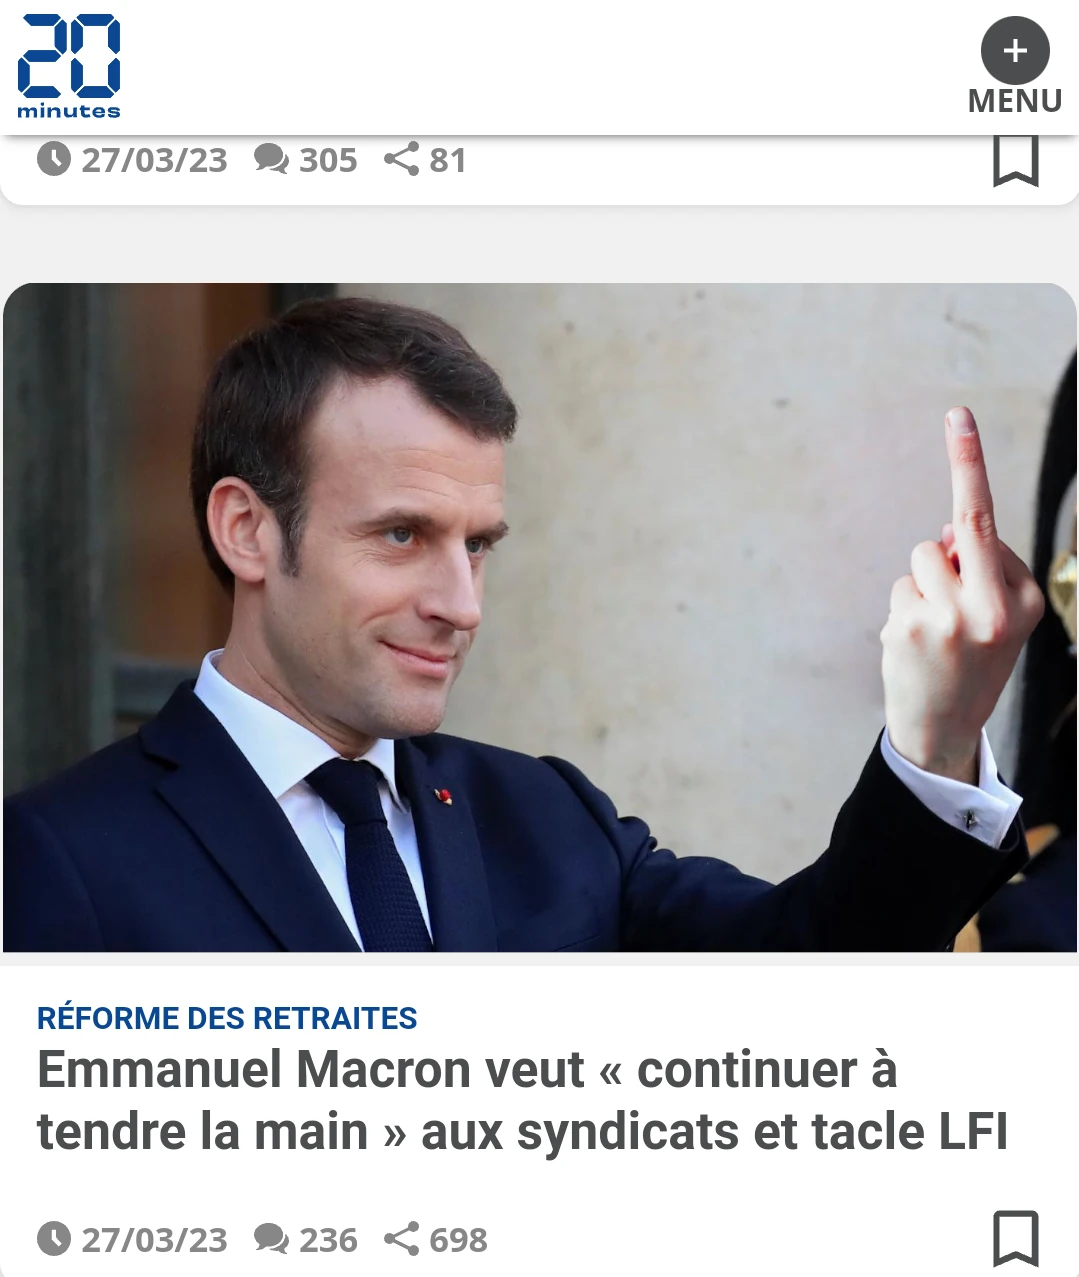 Le titre de l'article dit que Macron tend la main mais la photo le montre en train de tendre le majeur avec un sourire narquois